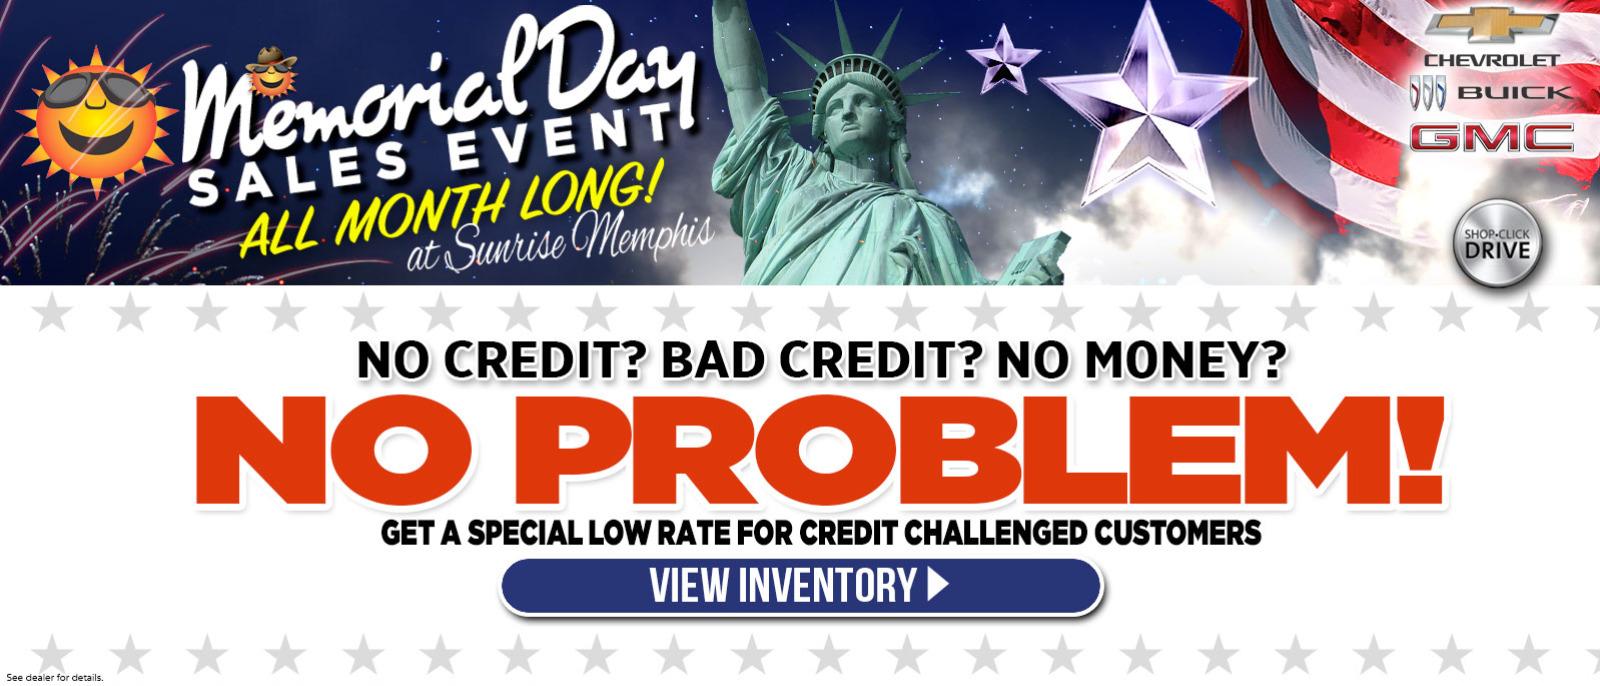 No Credit - Bad Credit - No Money - No Problem